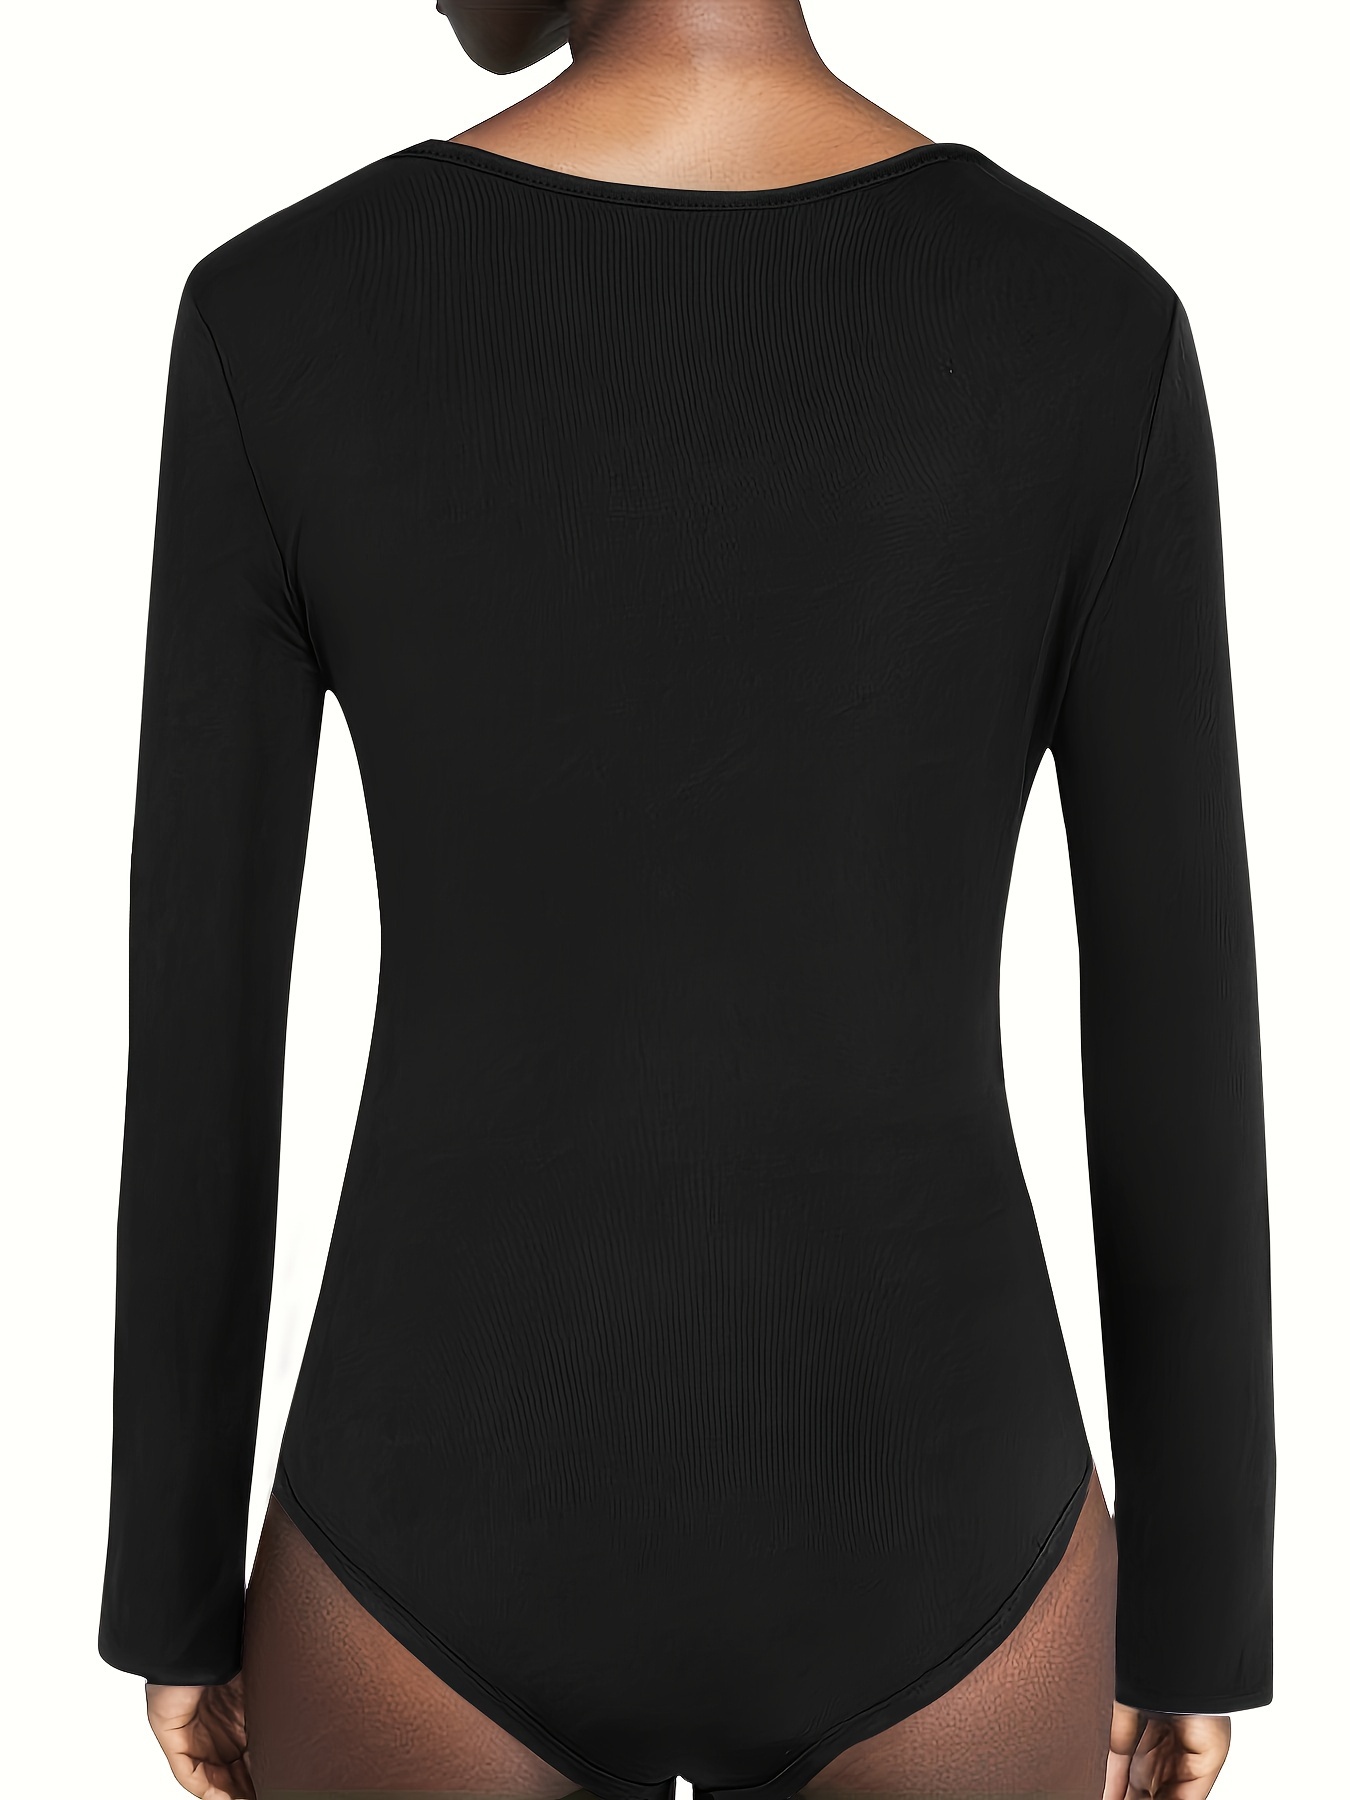 Free People Super-Soft Deep-V-Neck Bodysuit Black XS item #OB797472